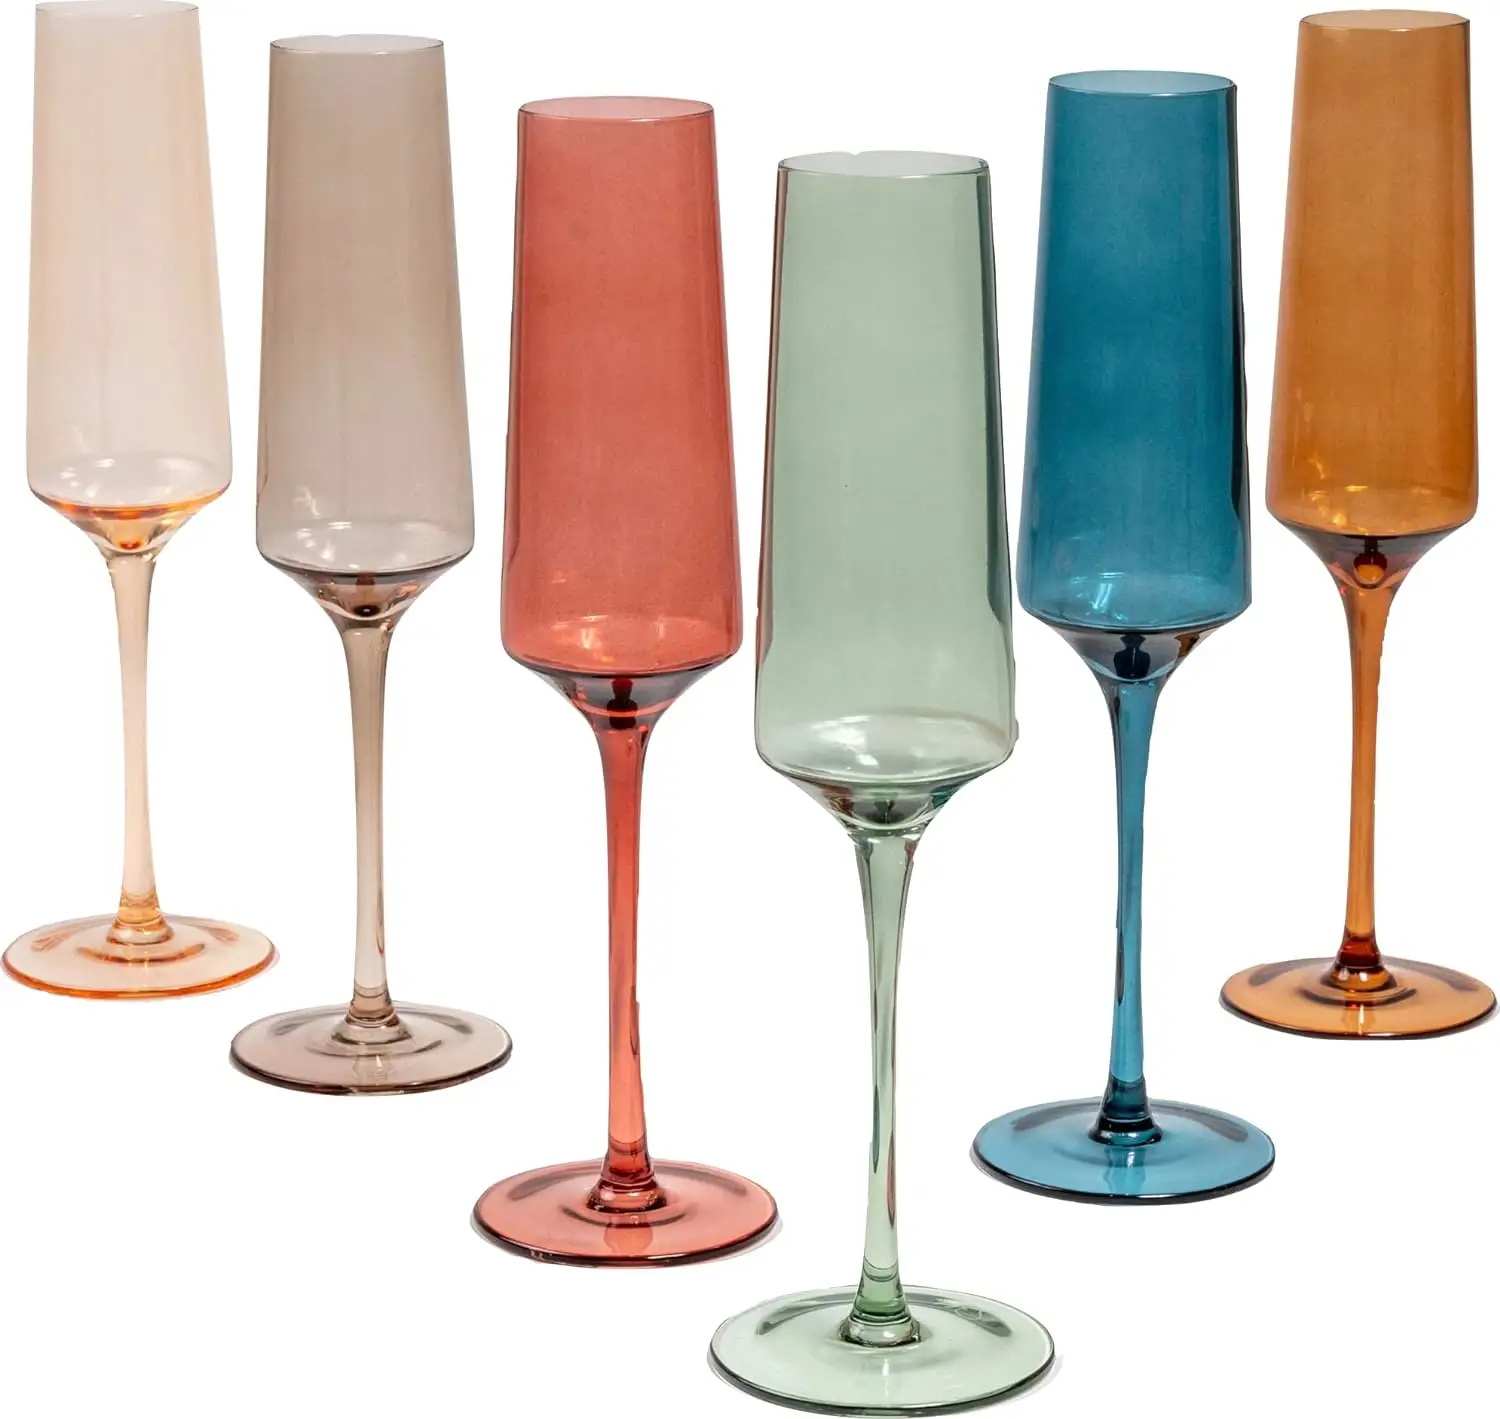 แก้วไวน์คริสตัลแบบเป่าด้วยมือแก้วไวน์หลากสีแก้วไวน์ชามทรงยาวก้านใหญ่แก้วไวน์สีสันสดใส